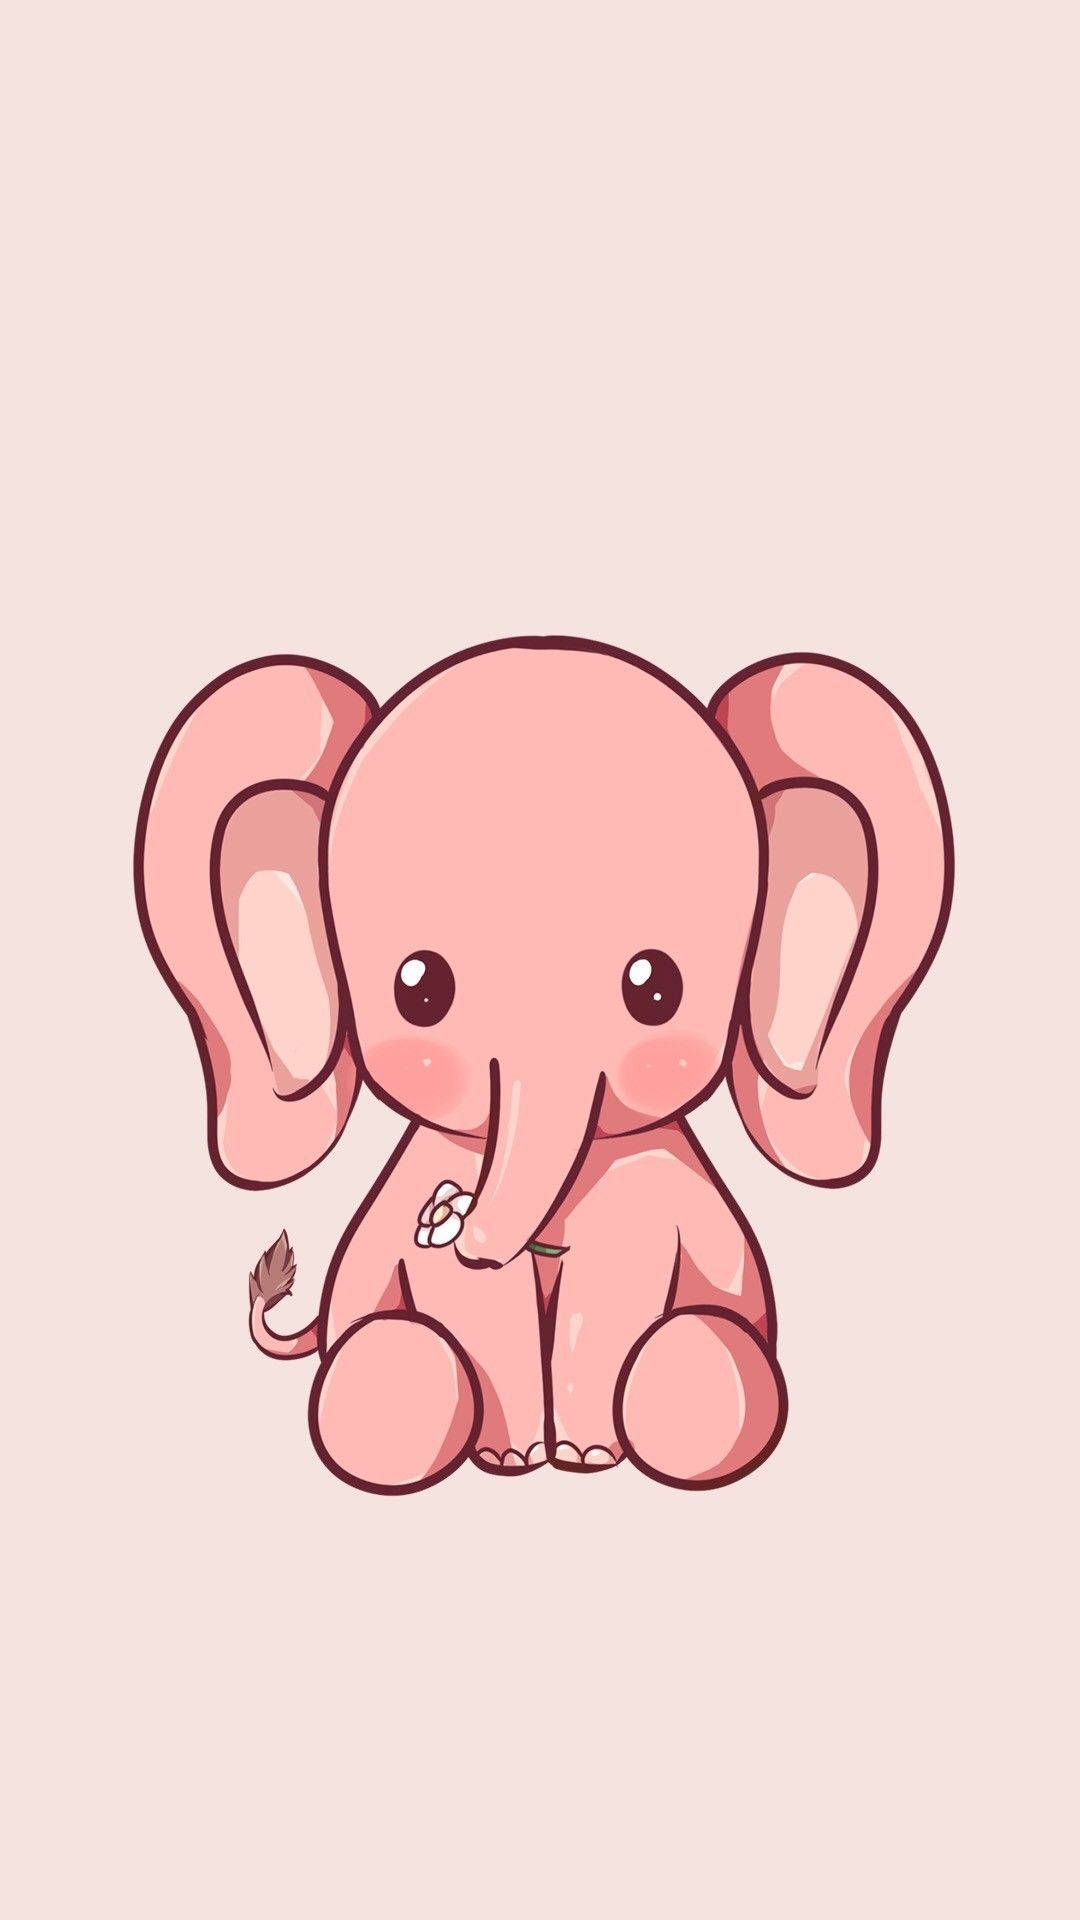  Elefant Hintergrundbild 1080x1920. Free Elephant iPhone Wallpaper Downloads, Elephant iPhone Wallpaper for FREE